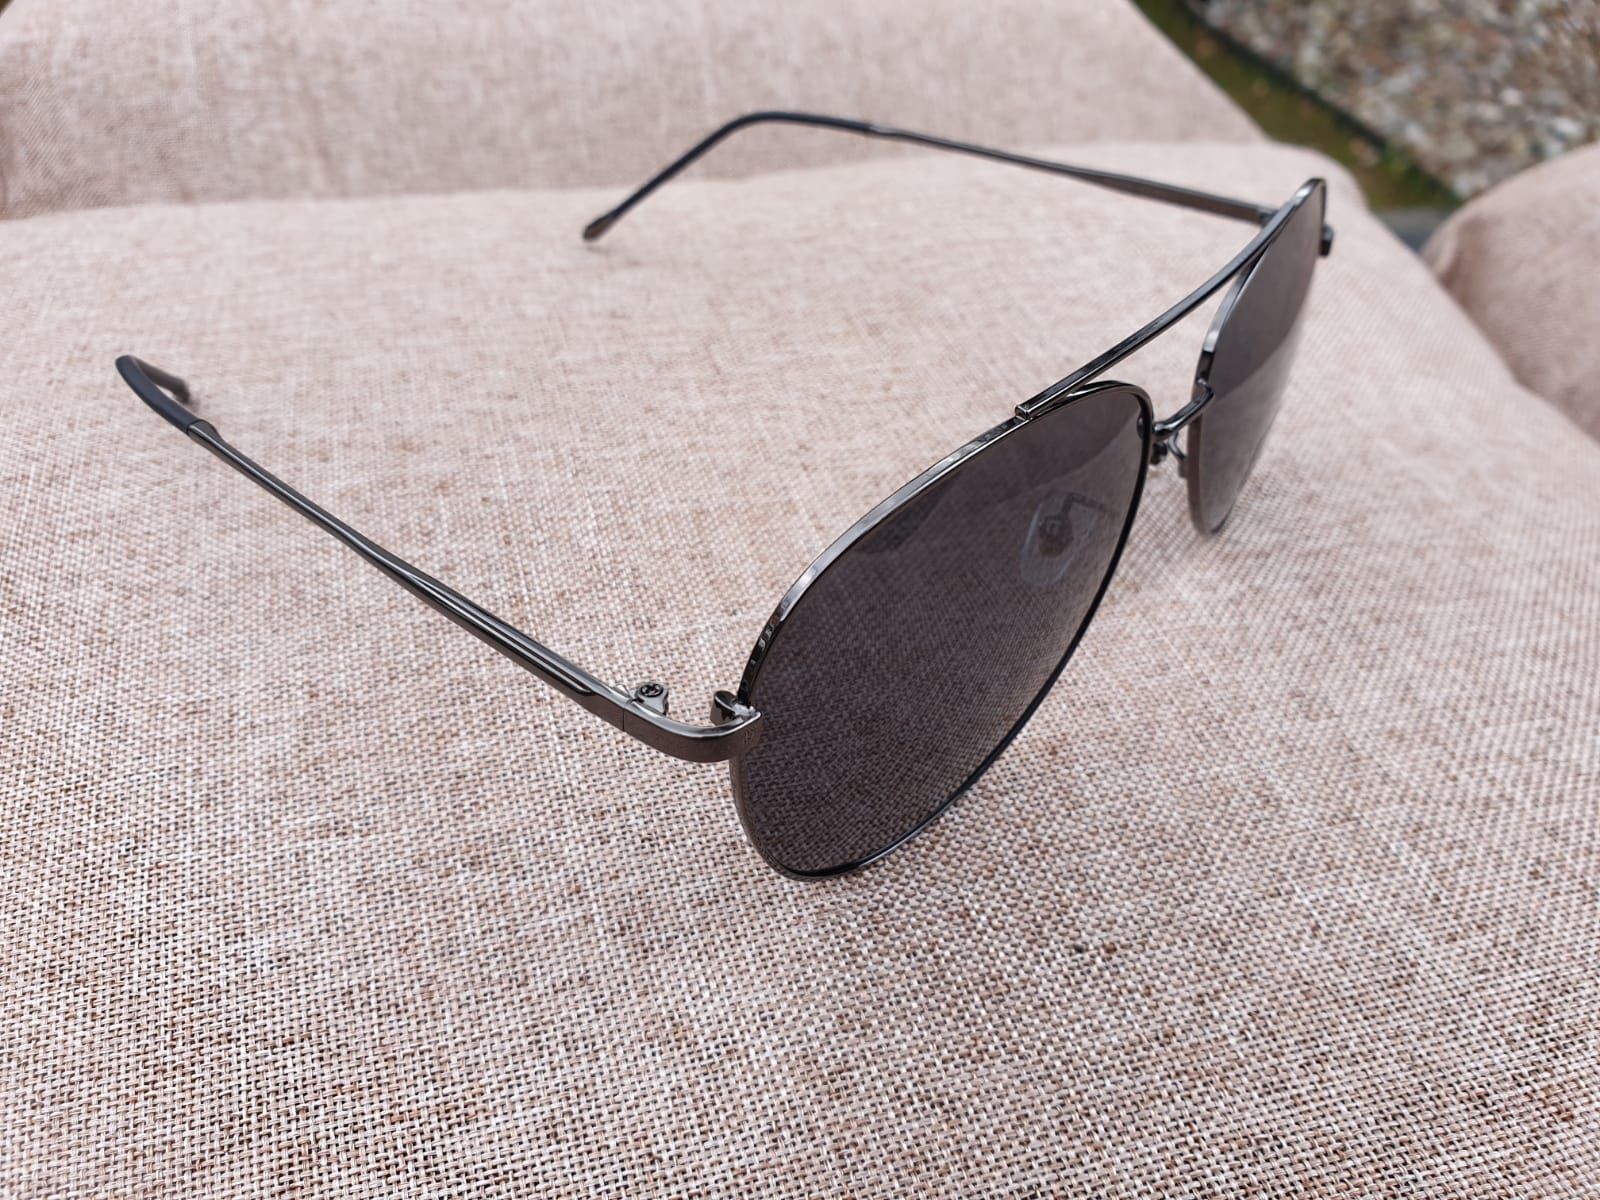 Nowe Okulary Polaryzacyjne UV400 Przeciwsłoneczne Gucci Czarne Okazja